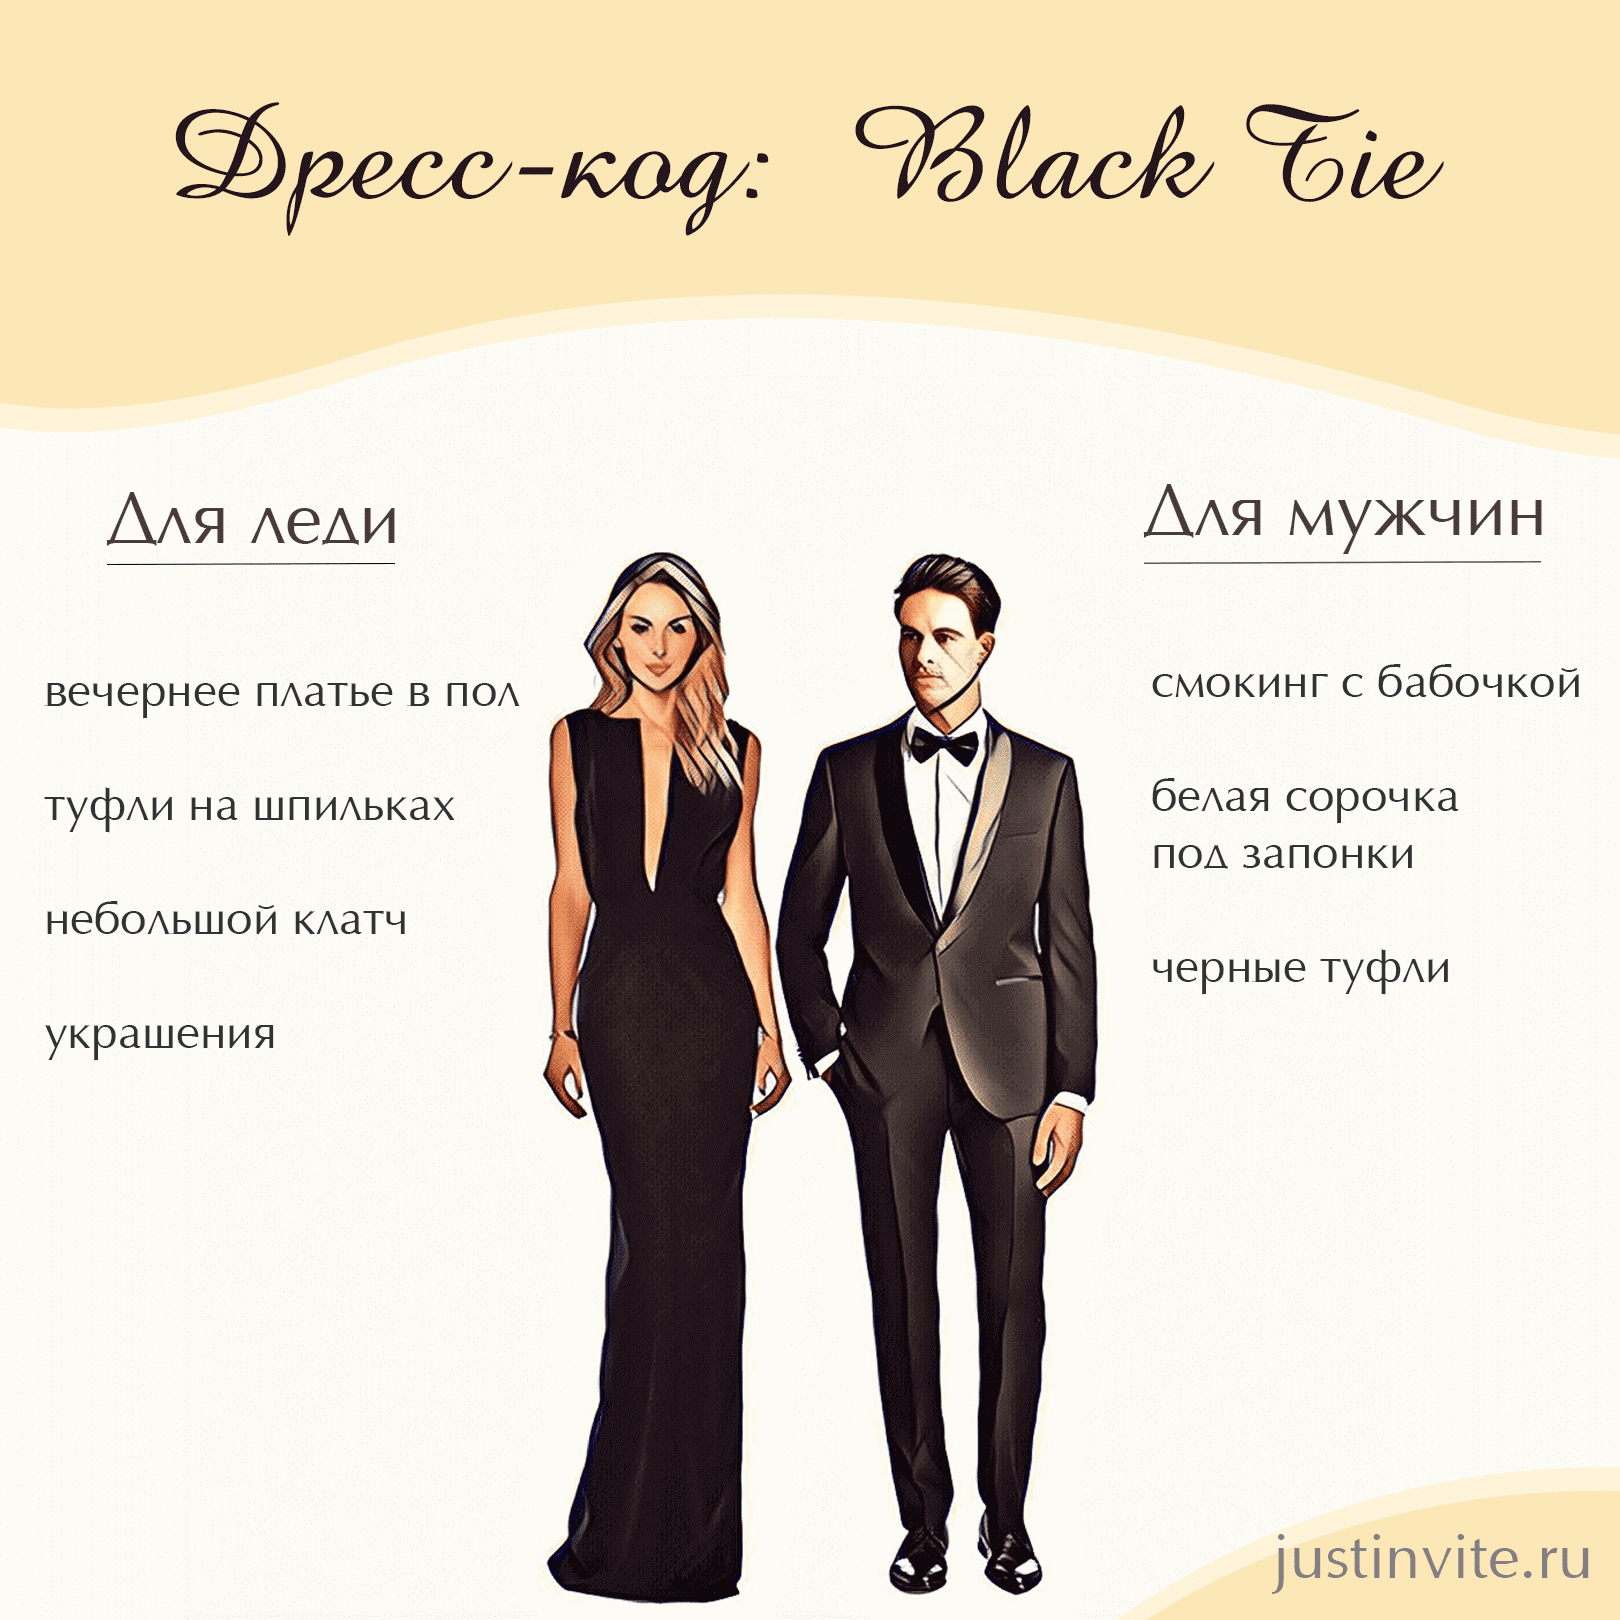 Дресс-код Black Tie для женщин и мужчин на свадьбу, день рождения или вечеринку.